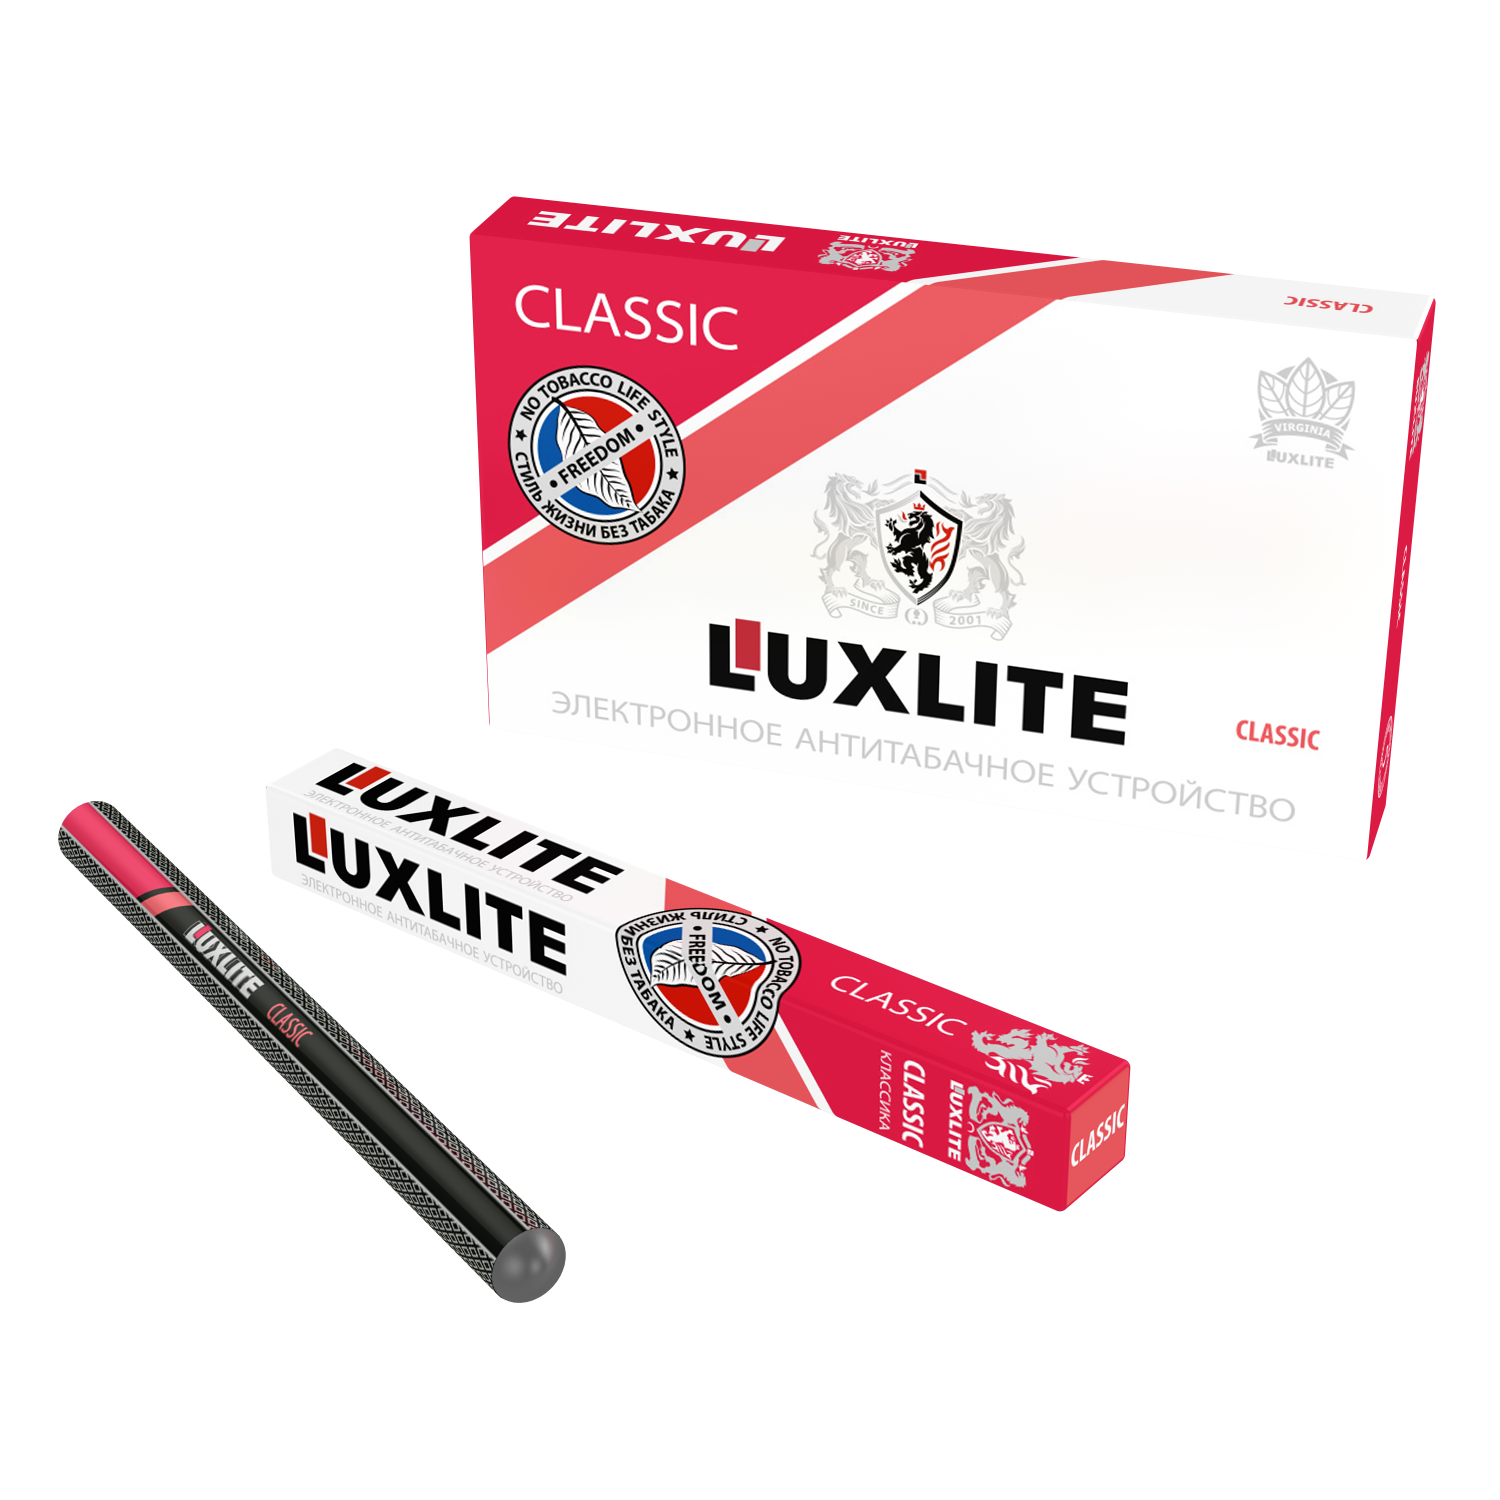 Одноразовые электронные сигареты Люкслайт. Электронная сигарета Luxlite Classic. Одноразовые сигареты Luxlite. Luxlite электронные сигареты без никотина. Одноразовая сигарета купить москва